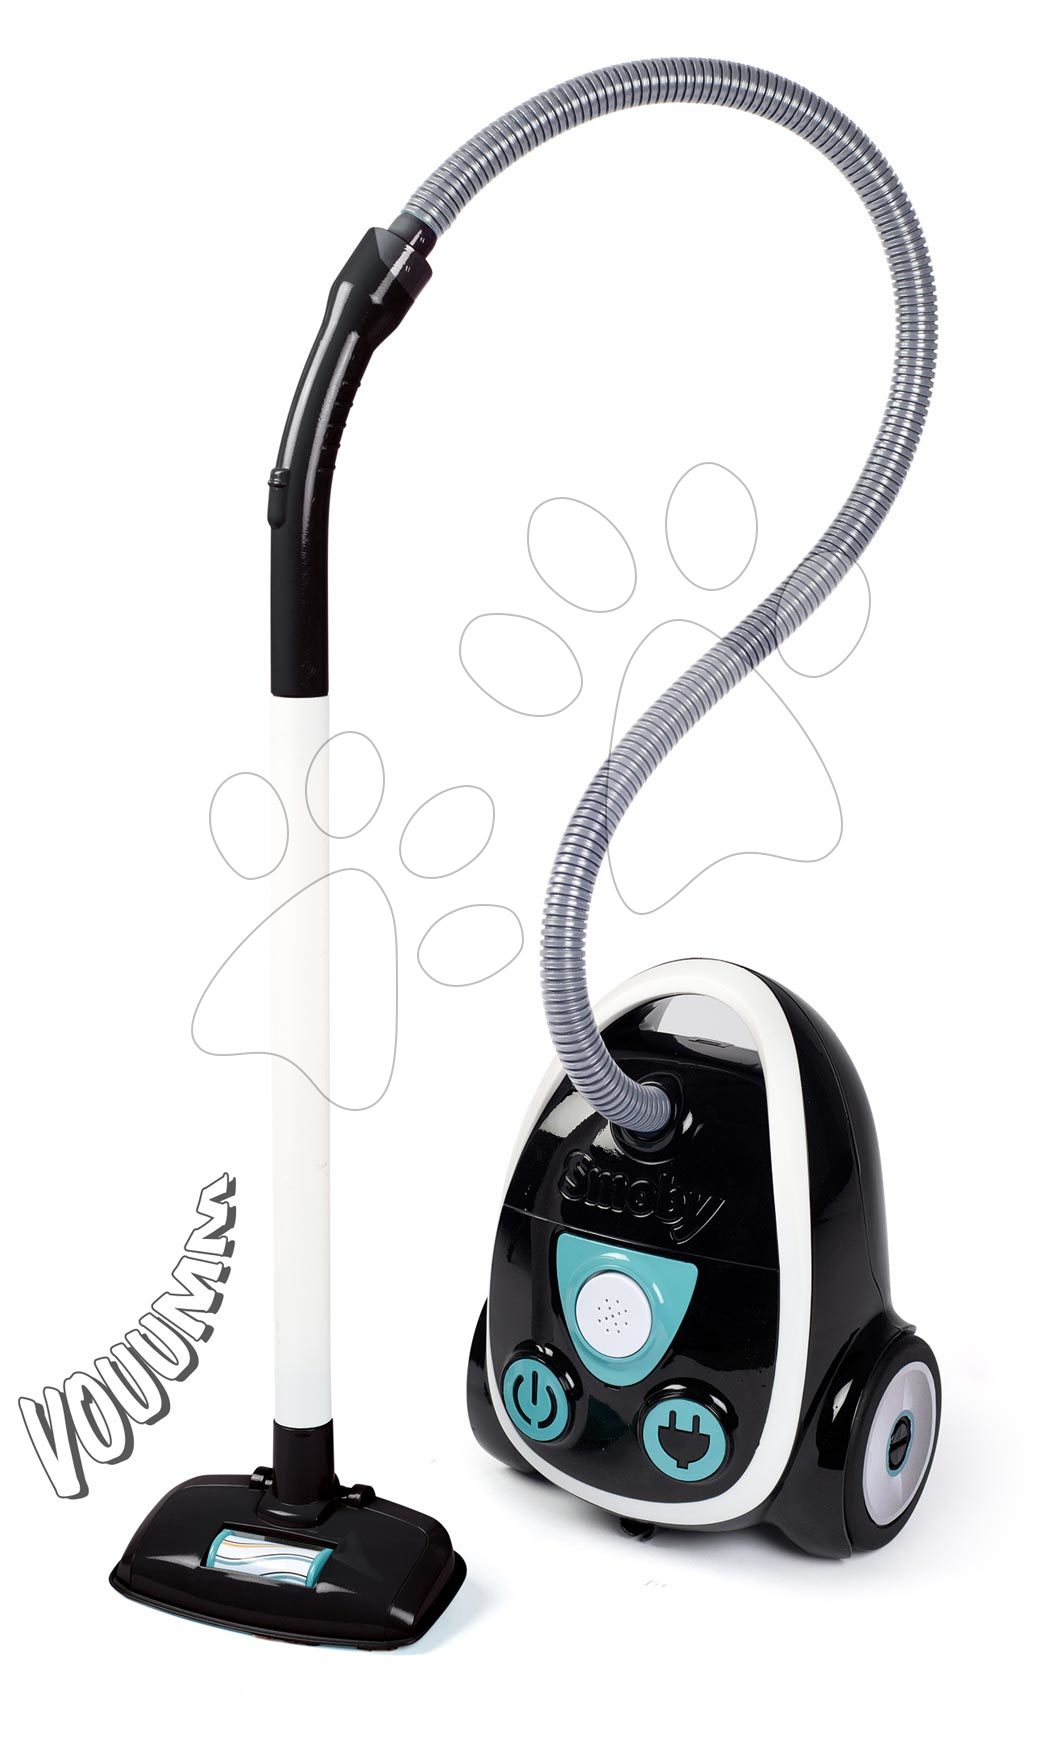 Igre kućanstva - Vysávač elektronický Vacuum Cleaner Smoby s reálnym zvukom vysávania SM330217